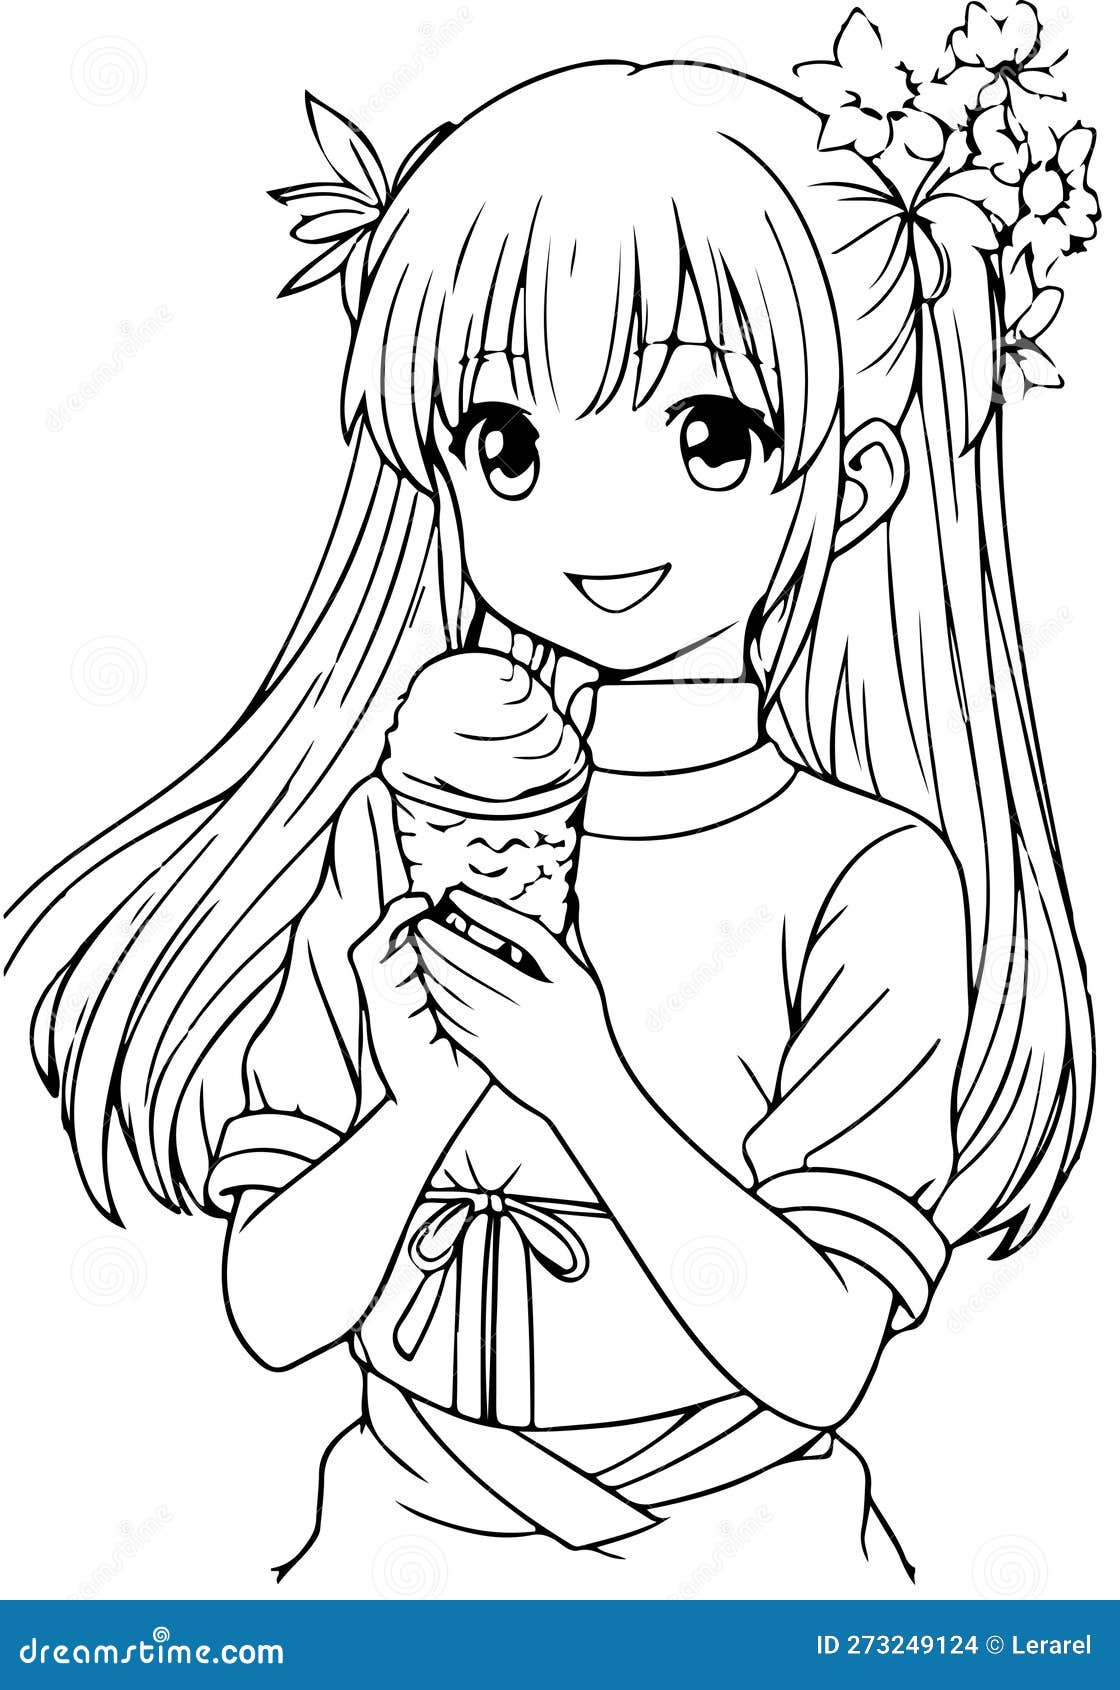 Livro de colorir kawaii desenhado à mão com sorvete